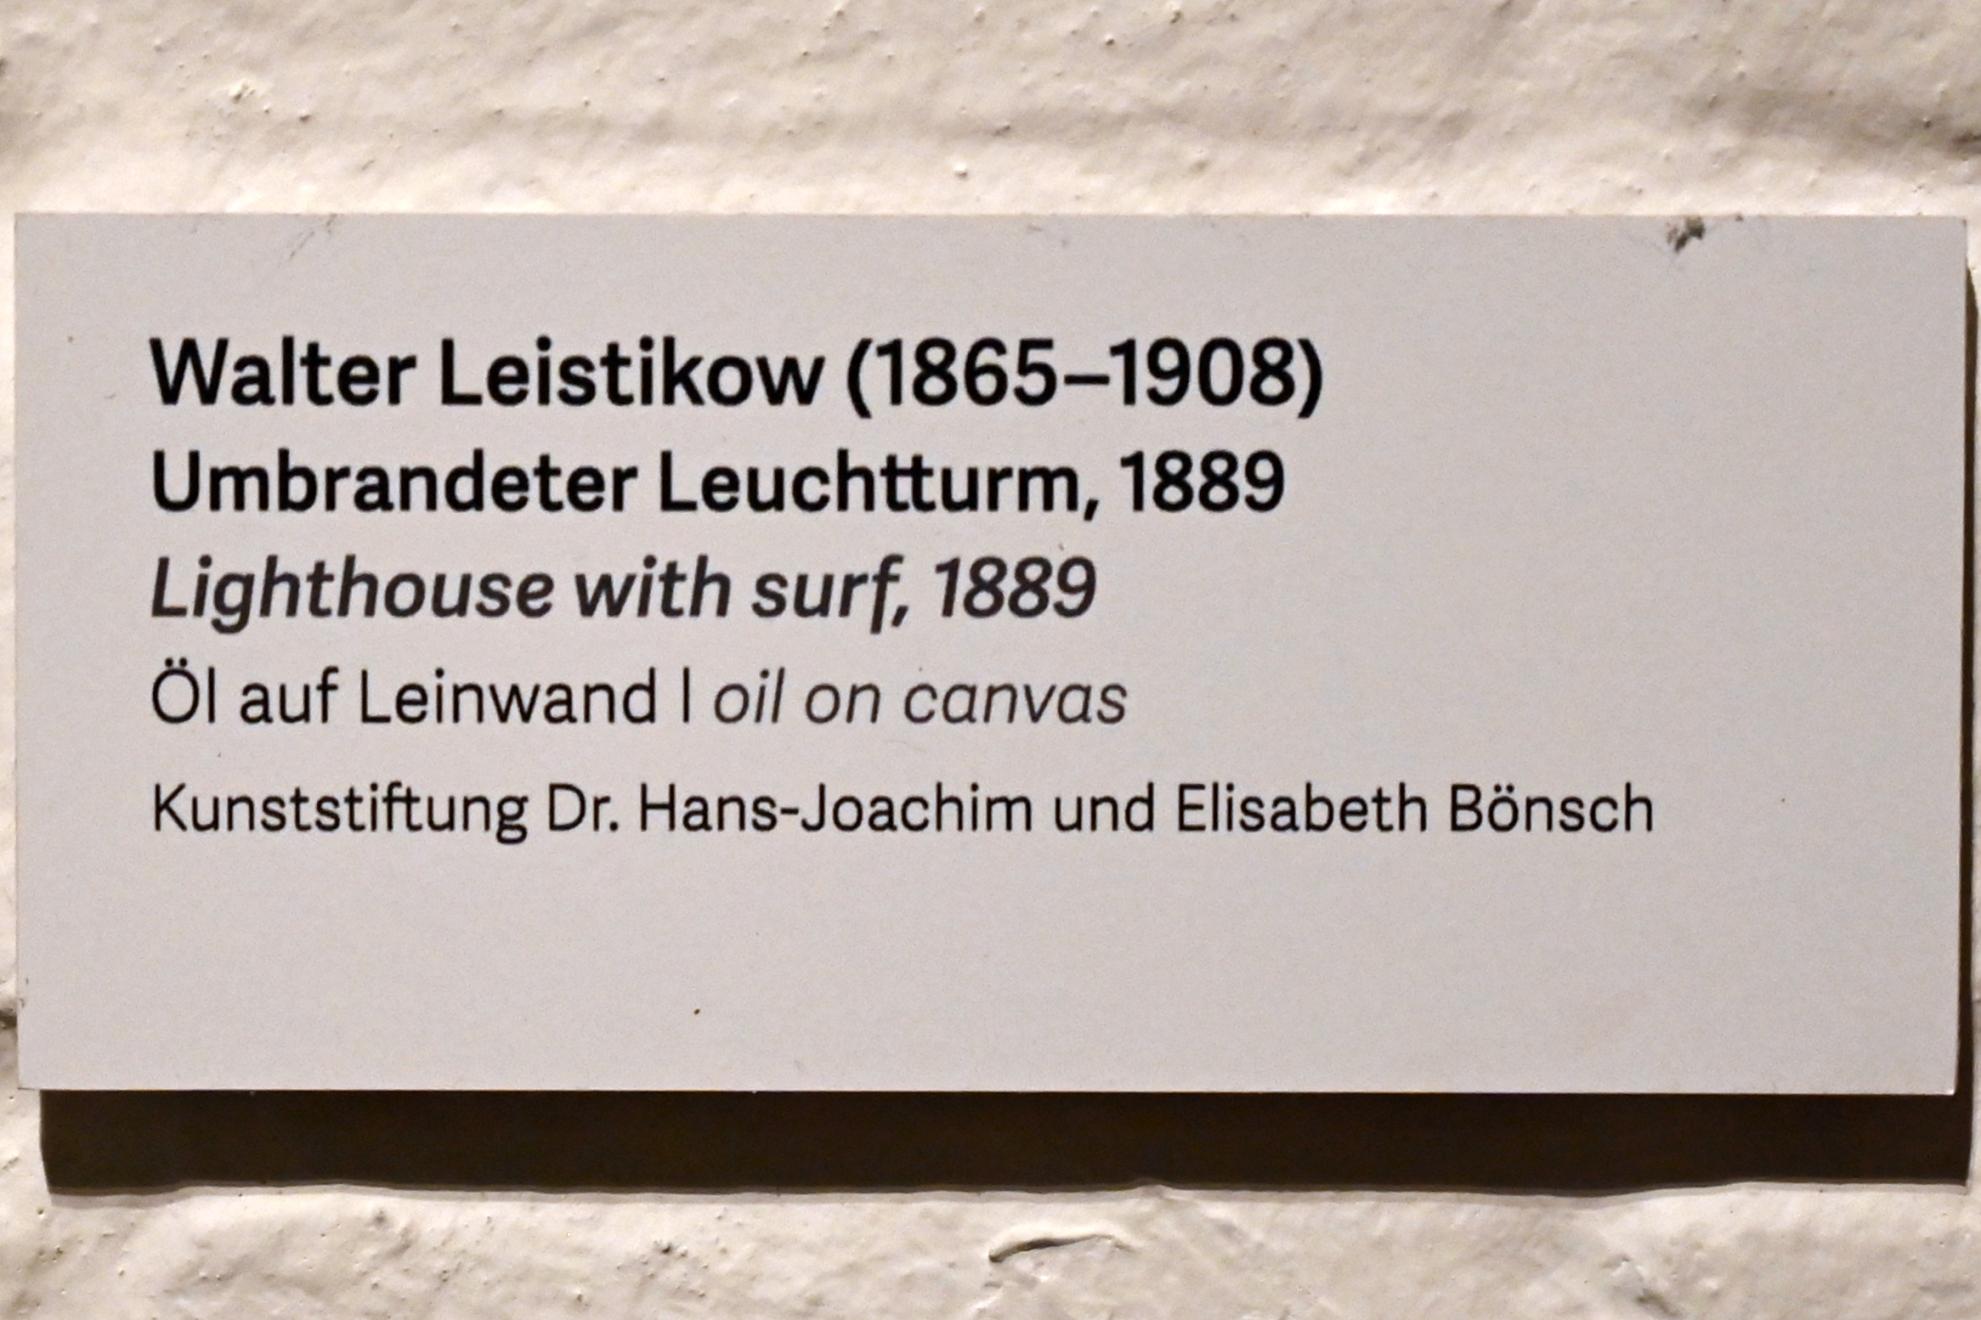 Walter Leistikow (1889–1903), Umbrandeter Leuchtturm, Schleswig, Landesmuseum für Kunst und Kulturgeschichte, Kunst im 20. Jh., 1889, Bild 2/2